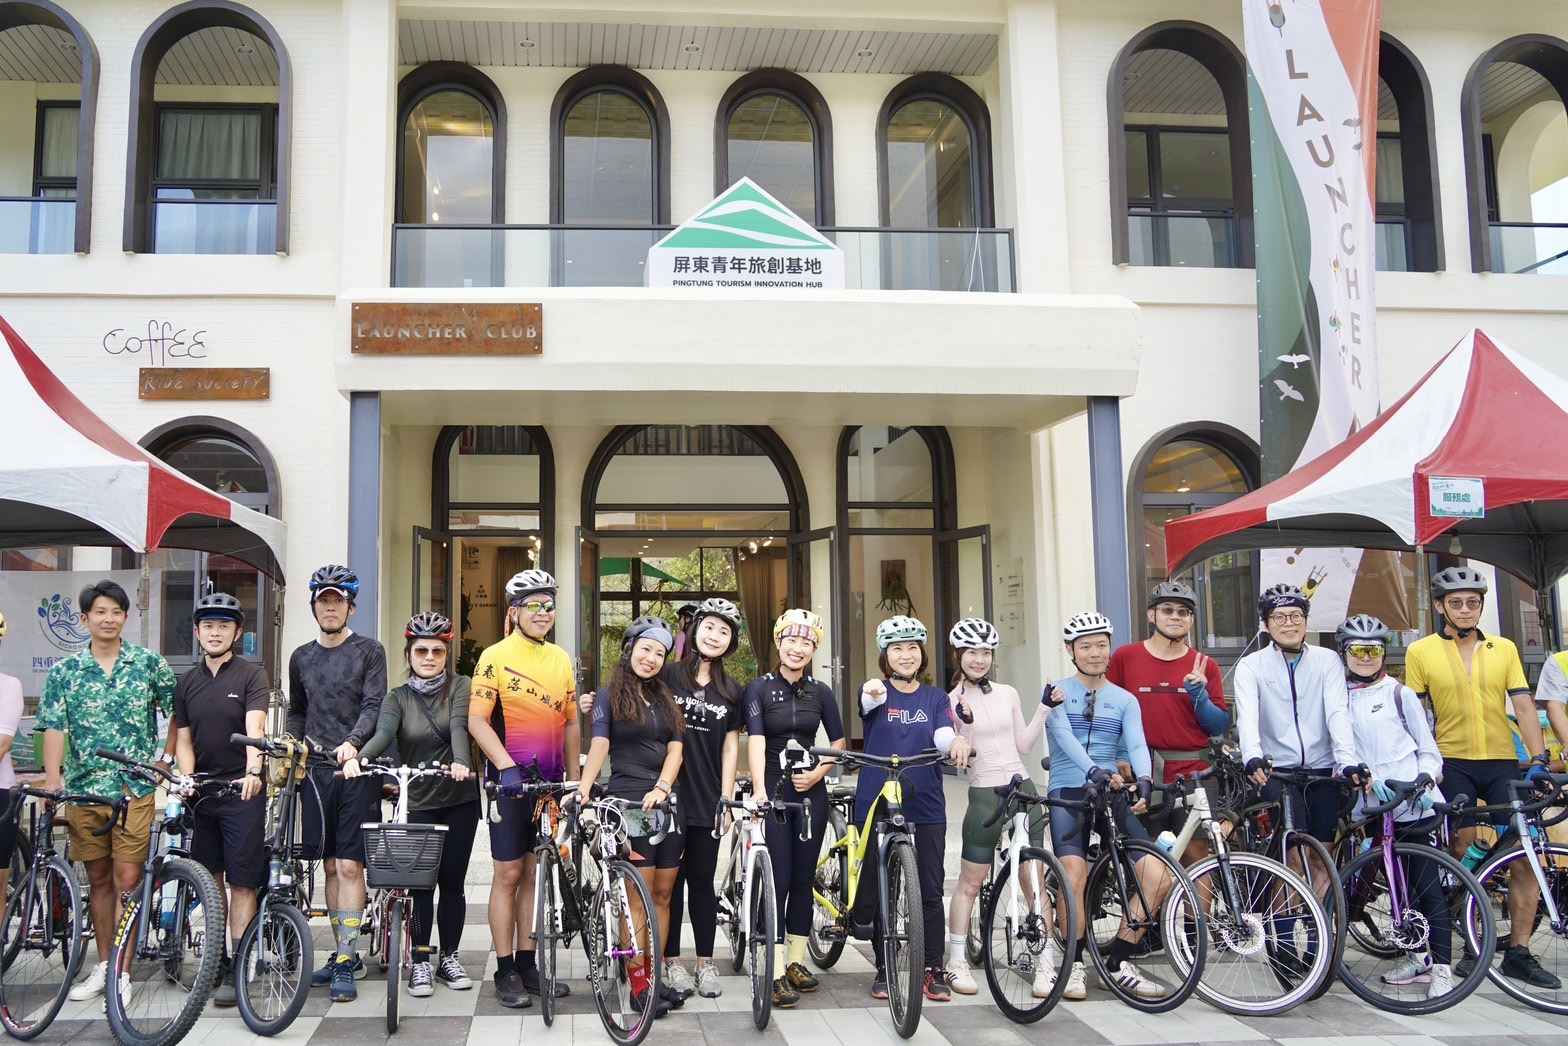 Pemerintah Kabupaten Pingtung baru-baru ini mengundang Youtuber sepeda terkenal untuk berpartisipasi dalam kegiatan bersepeda.  (Sumber foto : Pemerintah Kabupaten Pingtung)